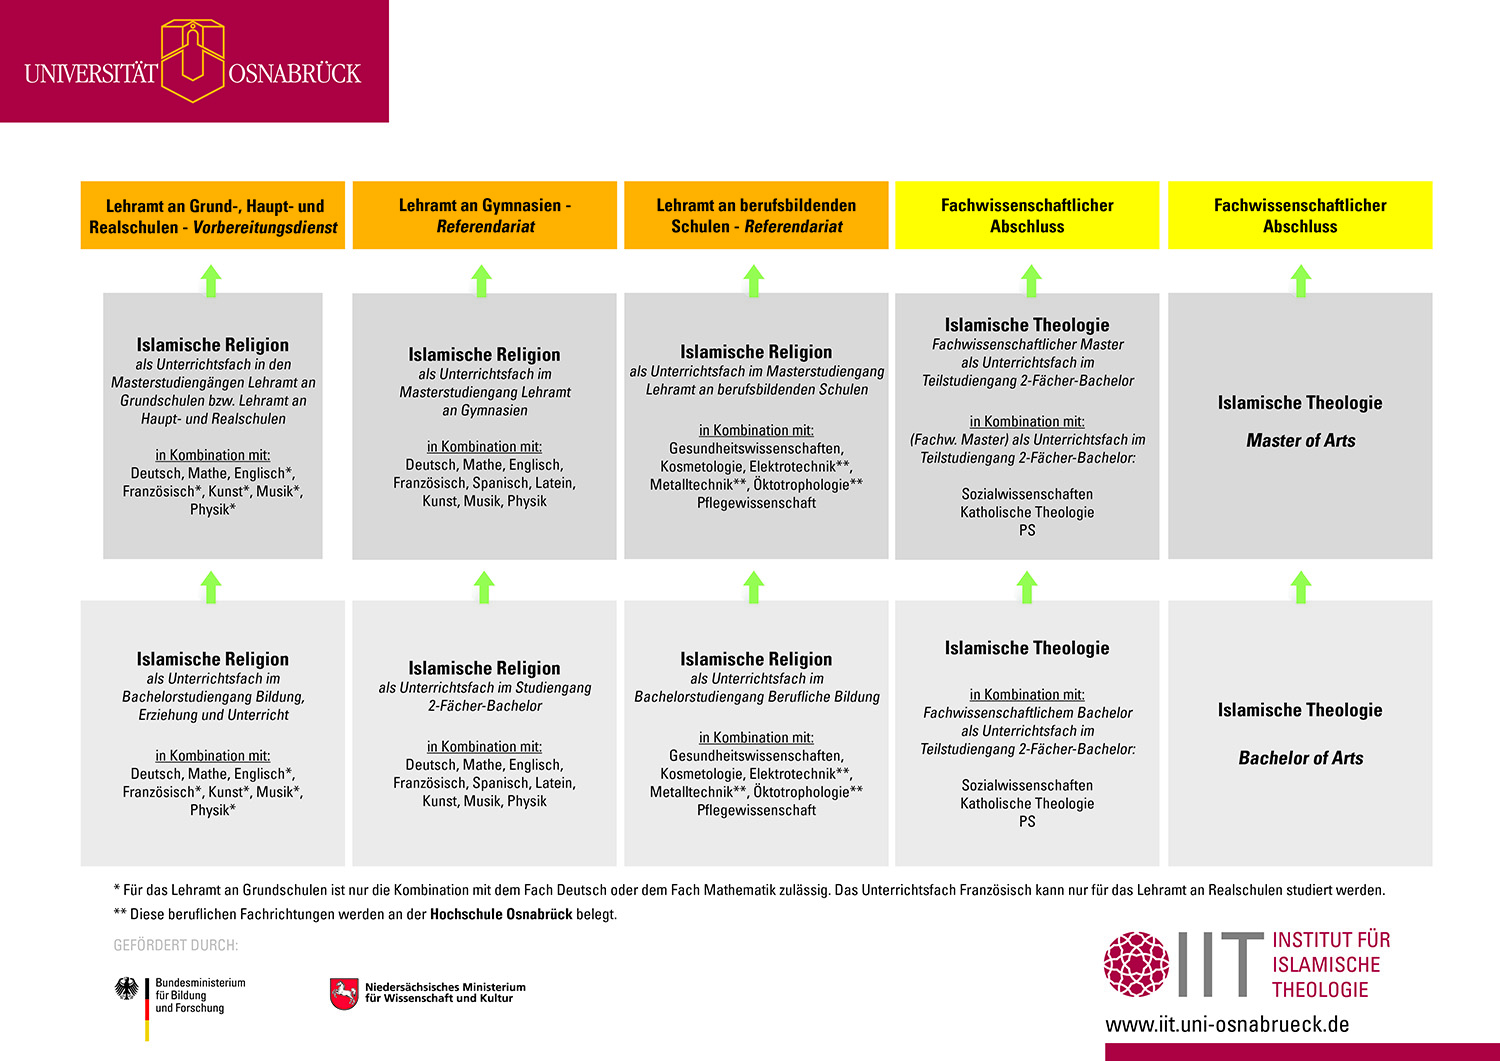 Laden Sie die Übersicht über die verschiedenen Studiengänge am IIT als PDF runter.